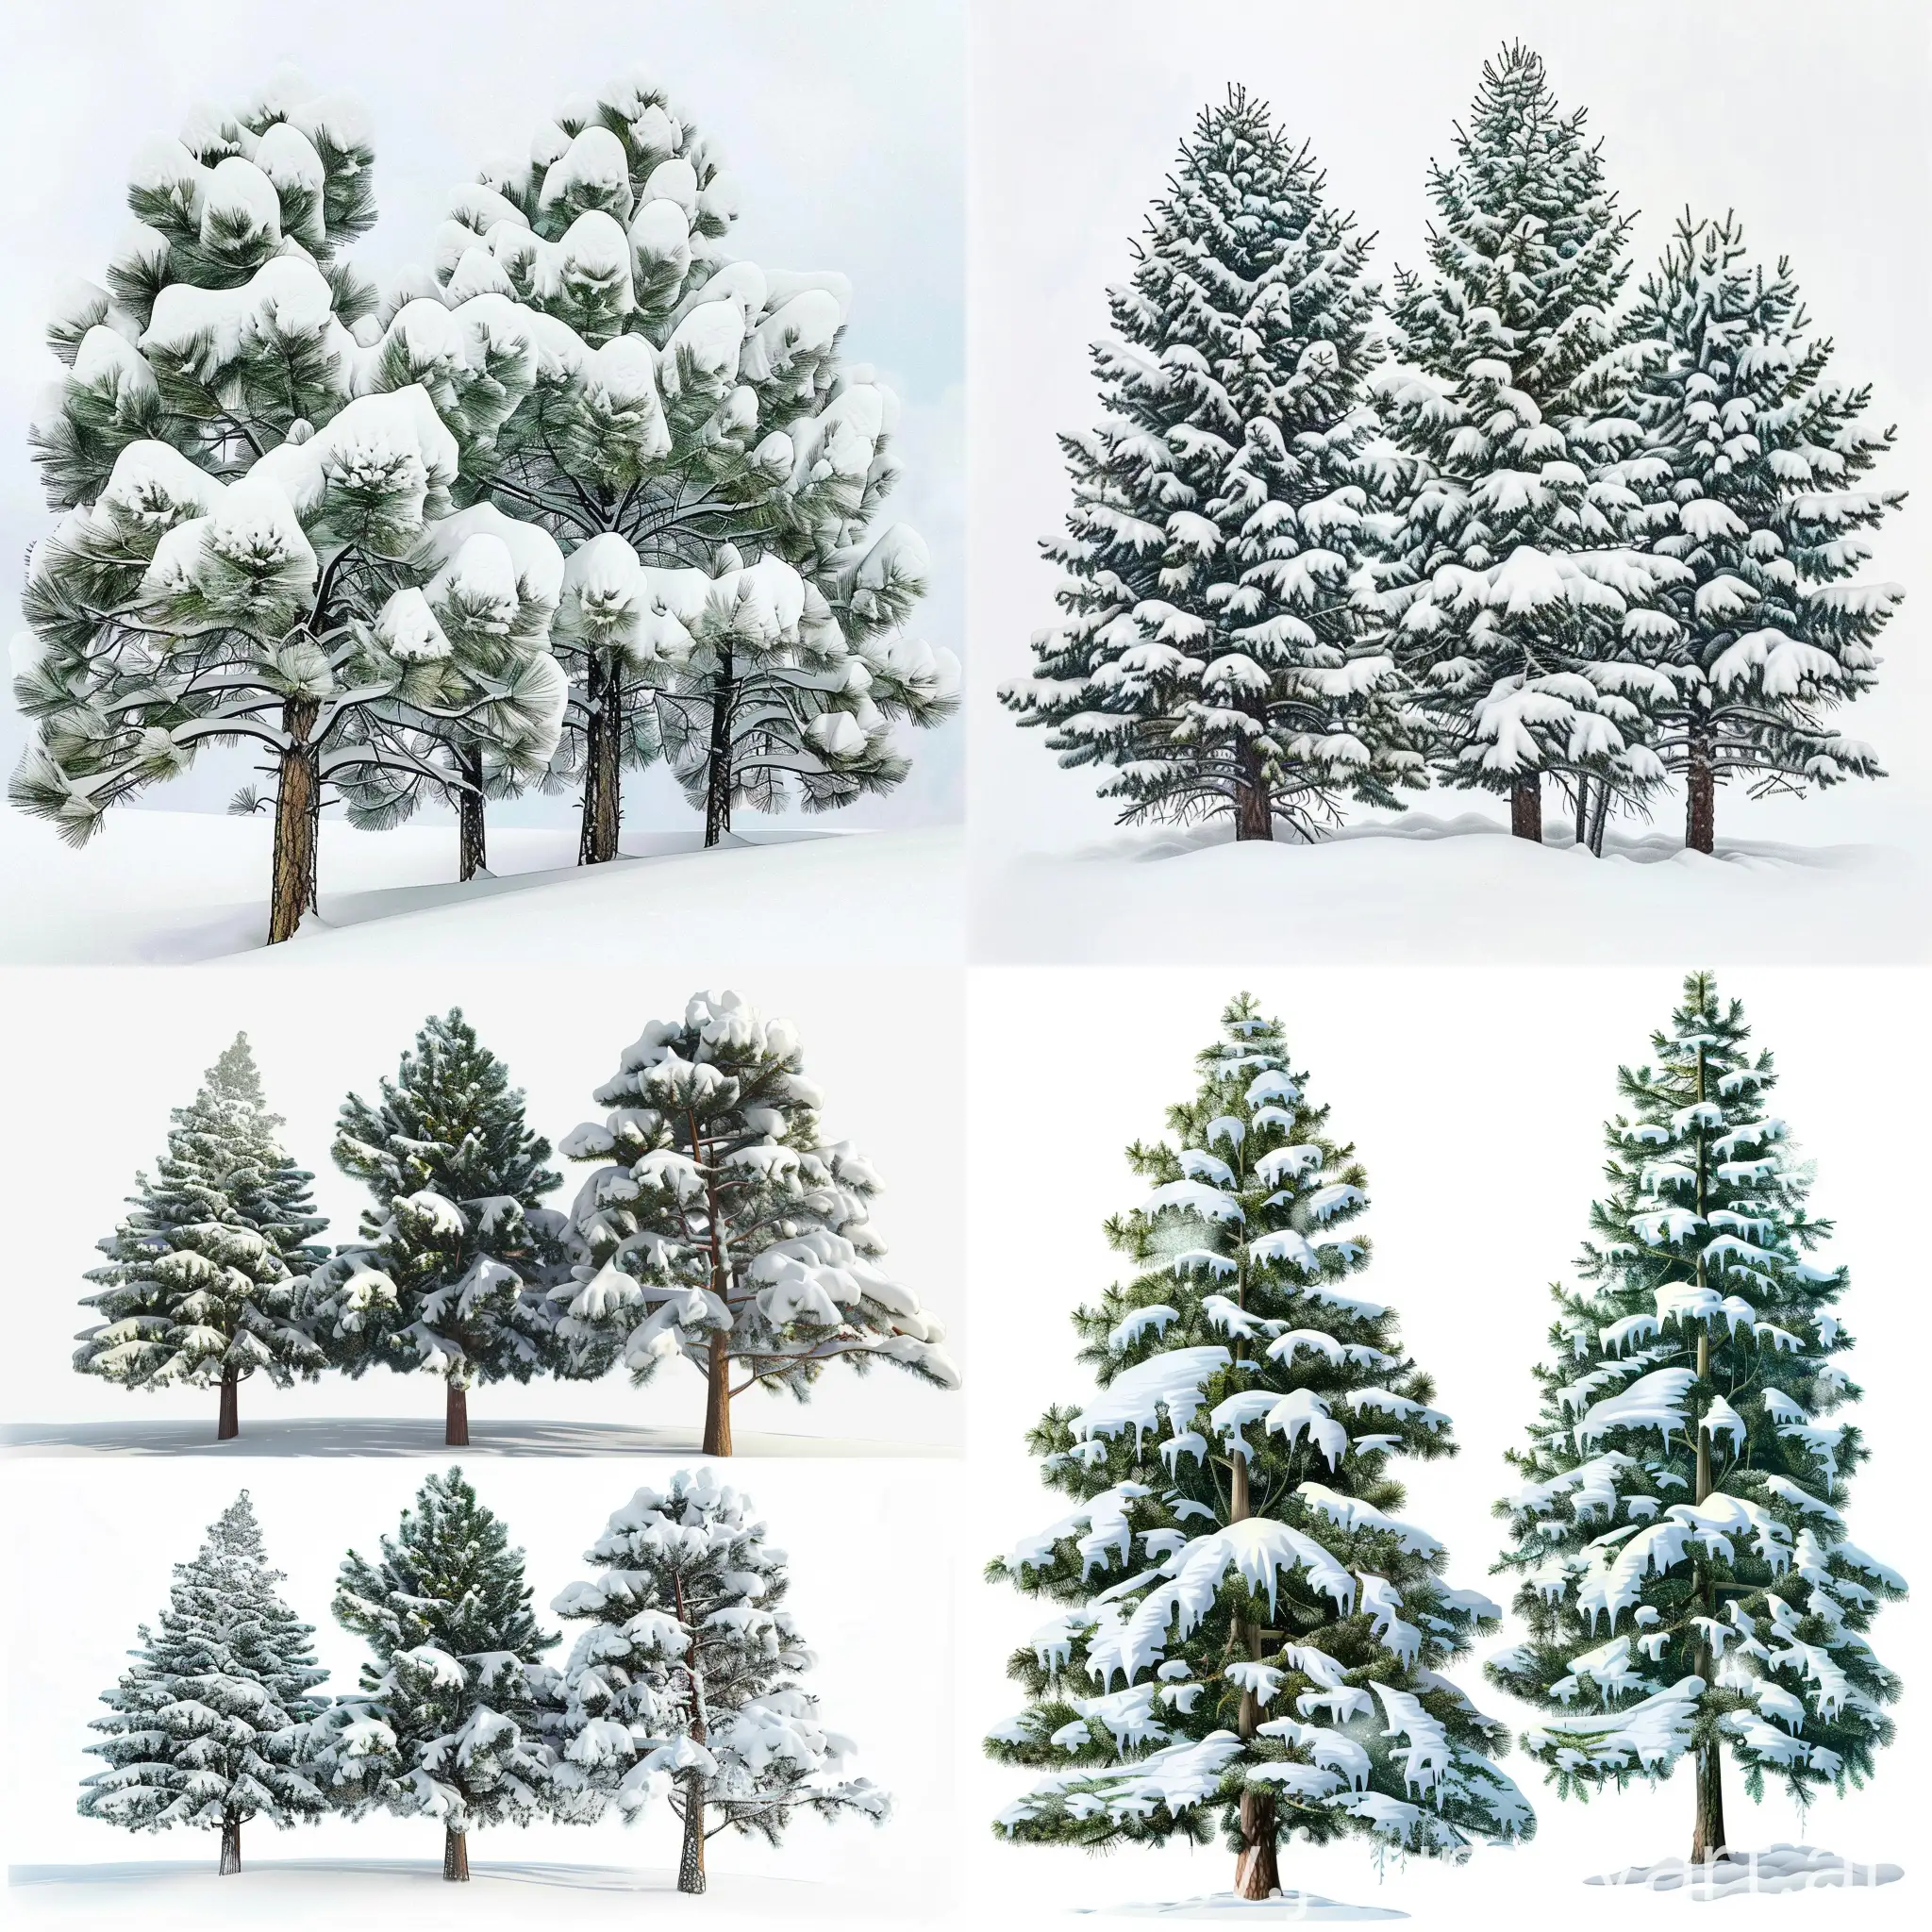 请帮我画一些松树实景照片实景照片，松树上洛满了雪，雪压弯了松树，